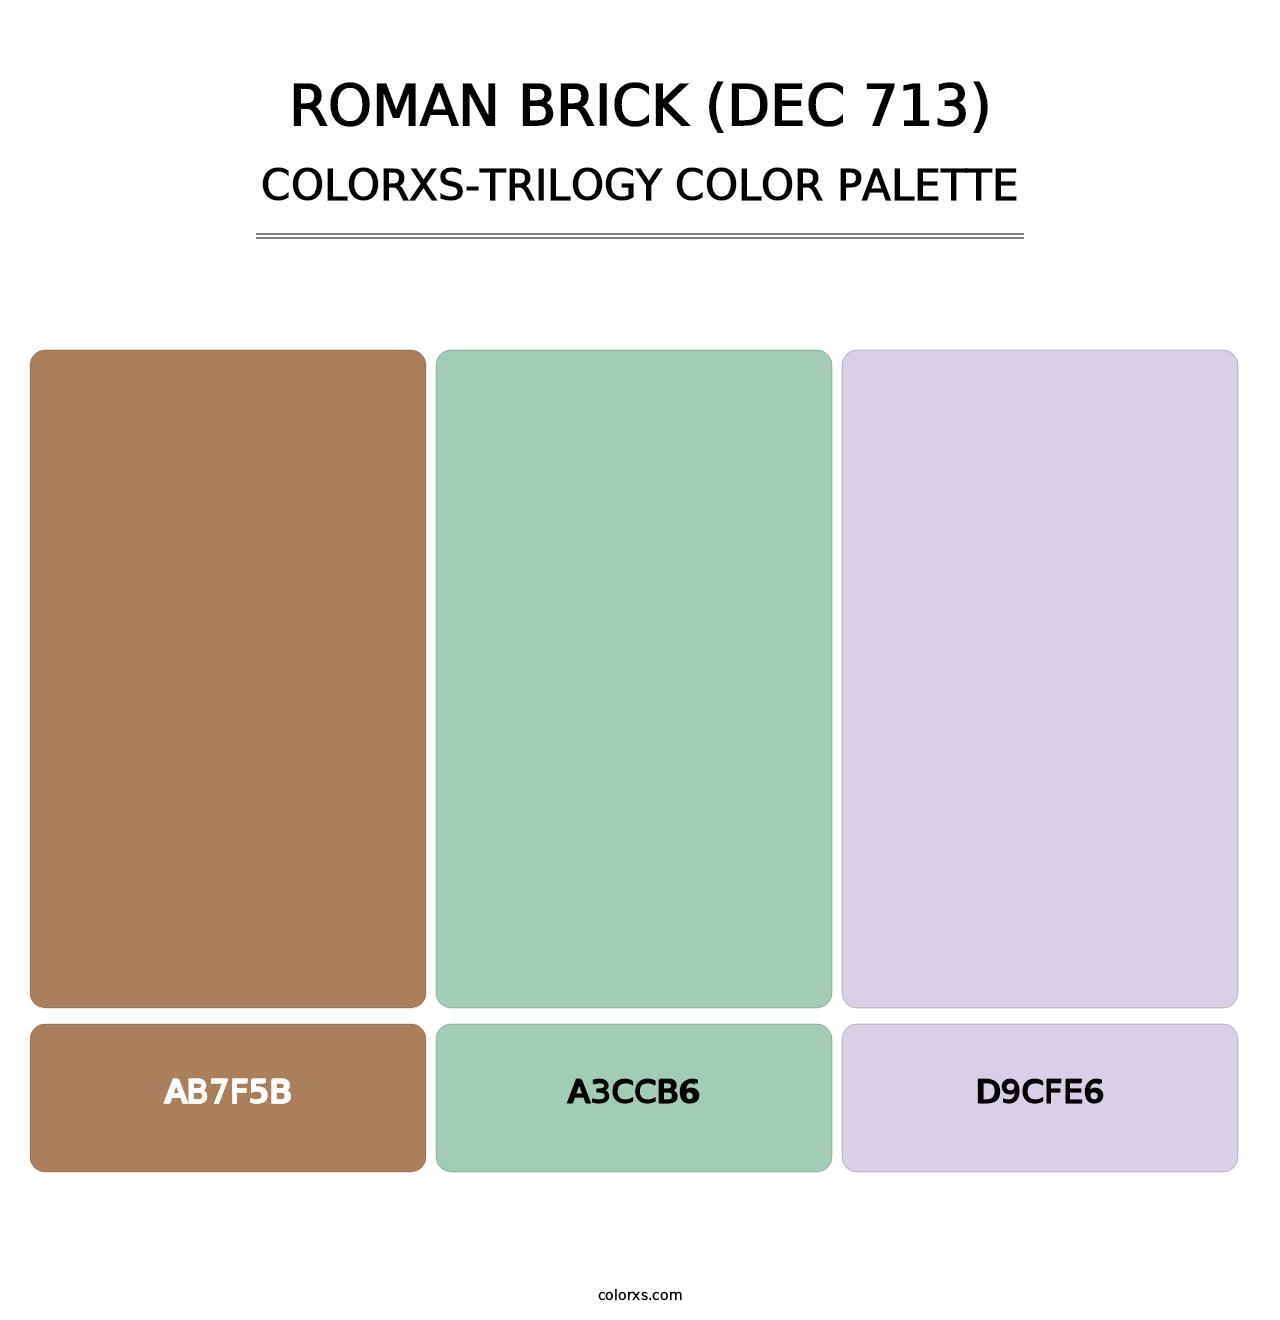 Roman Brick (DEC 713) - Colorxs Trilogy Palette